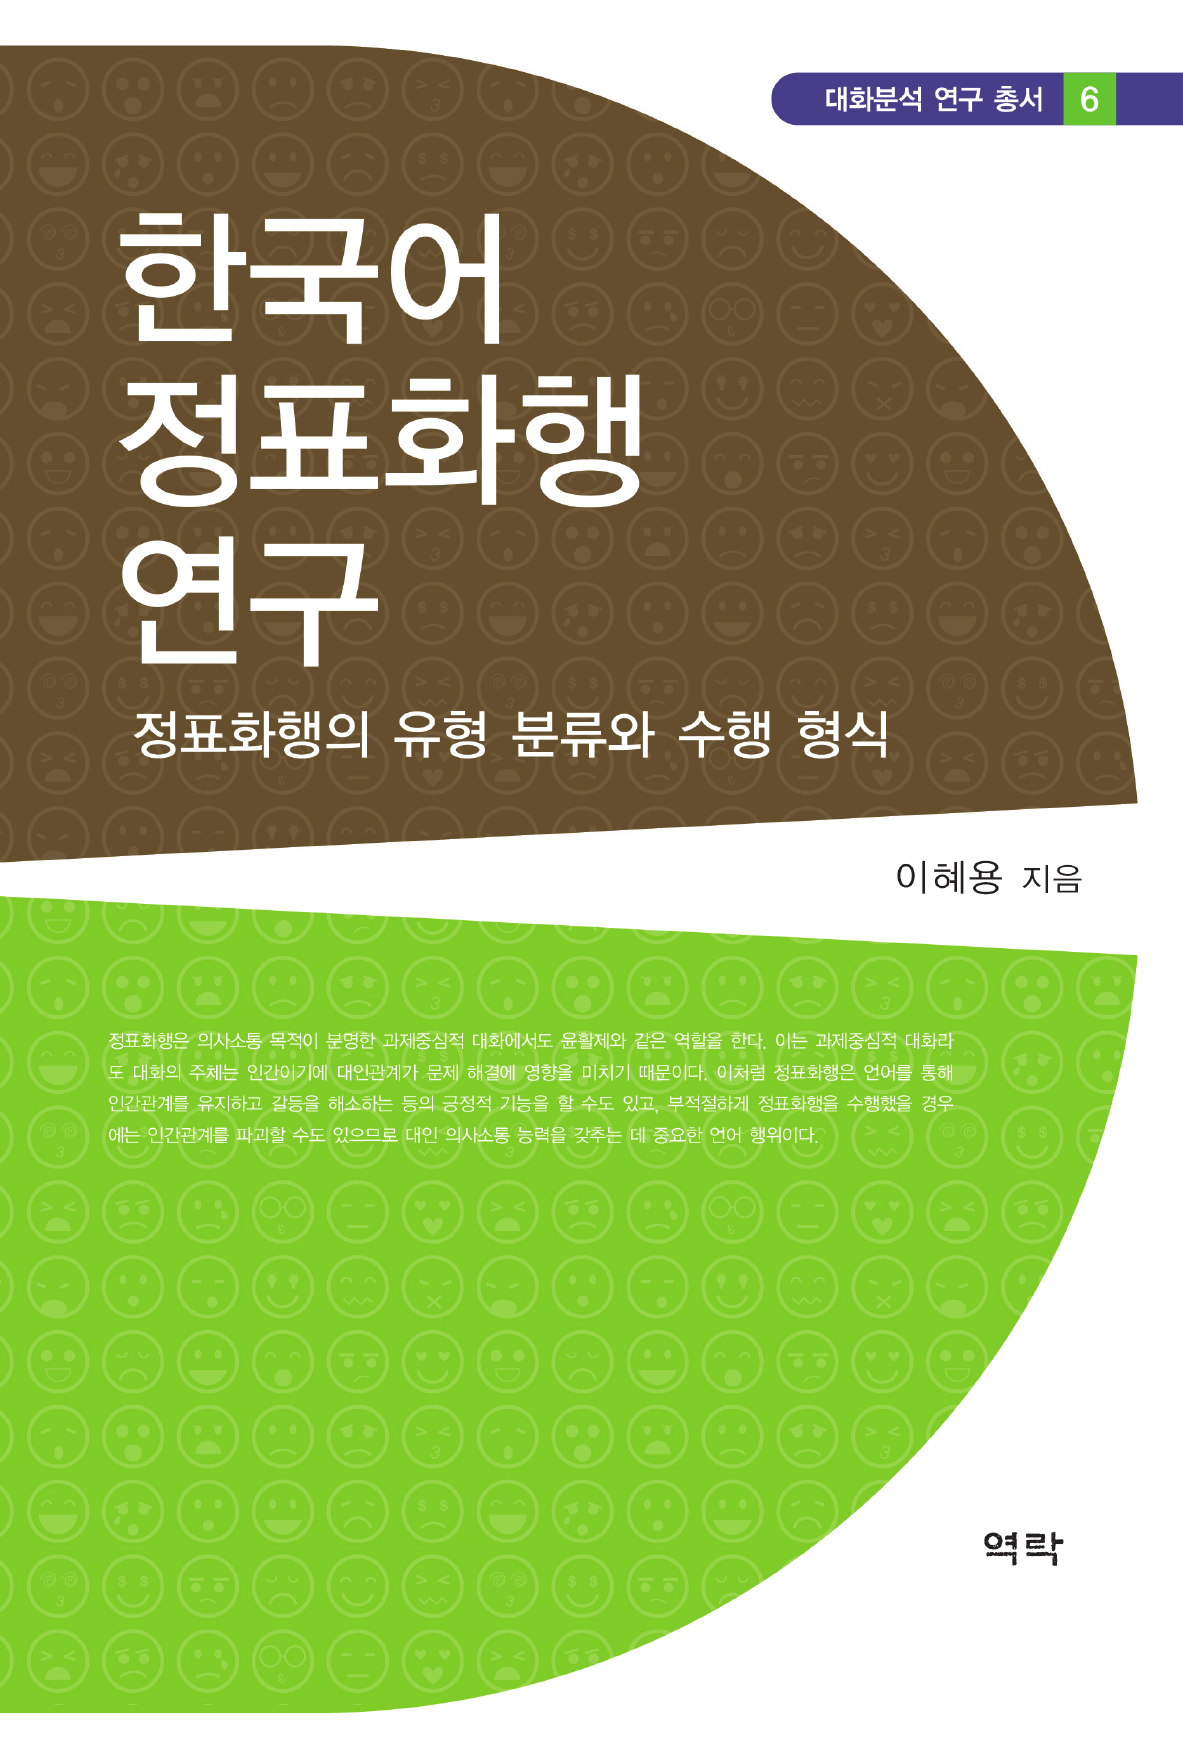 한국어 정표화행 연구